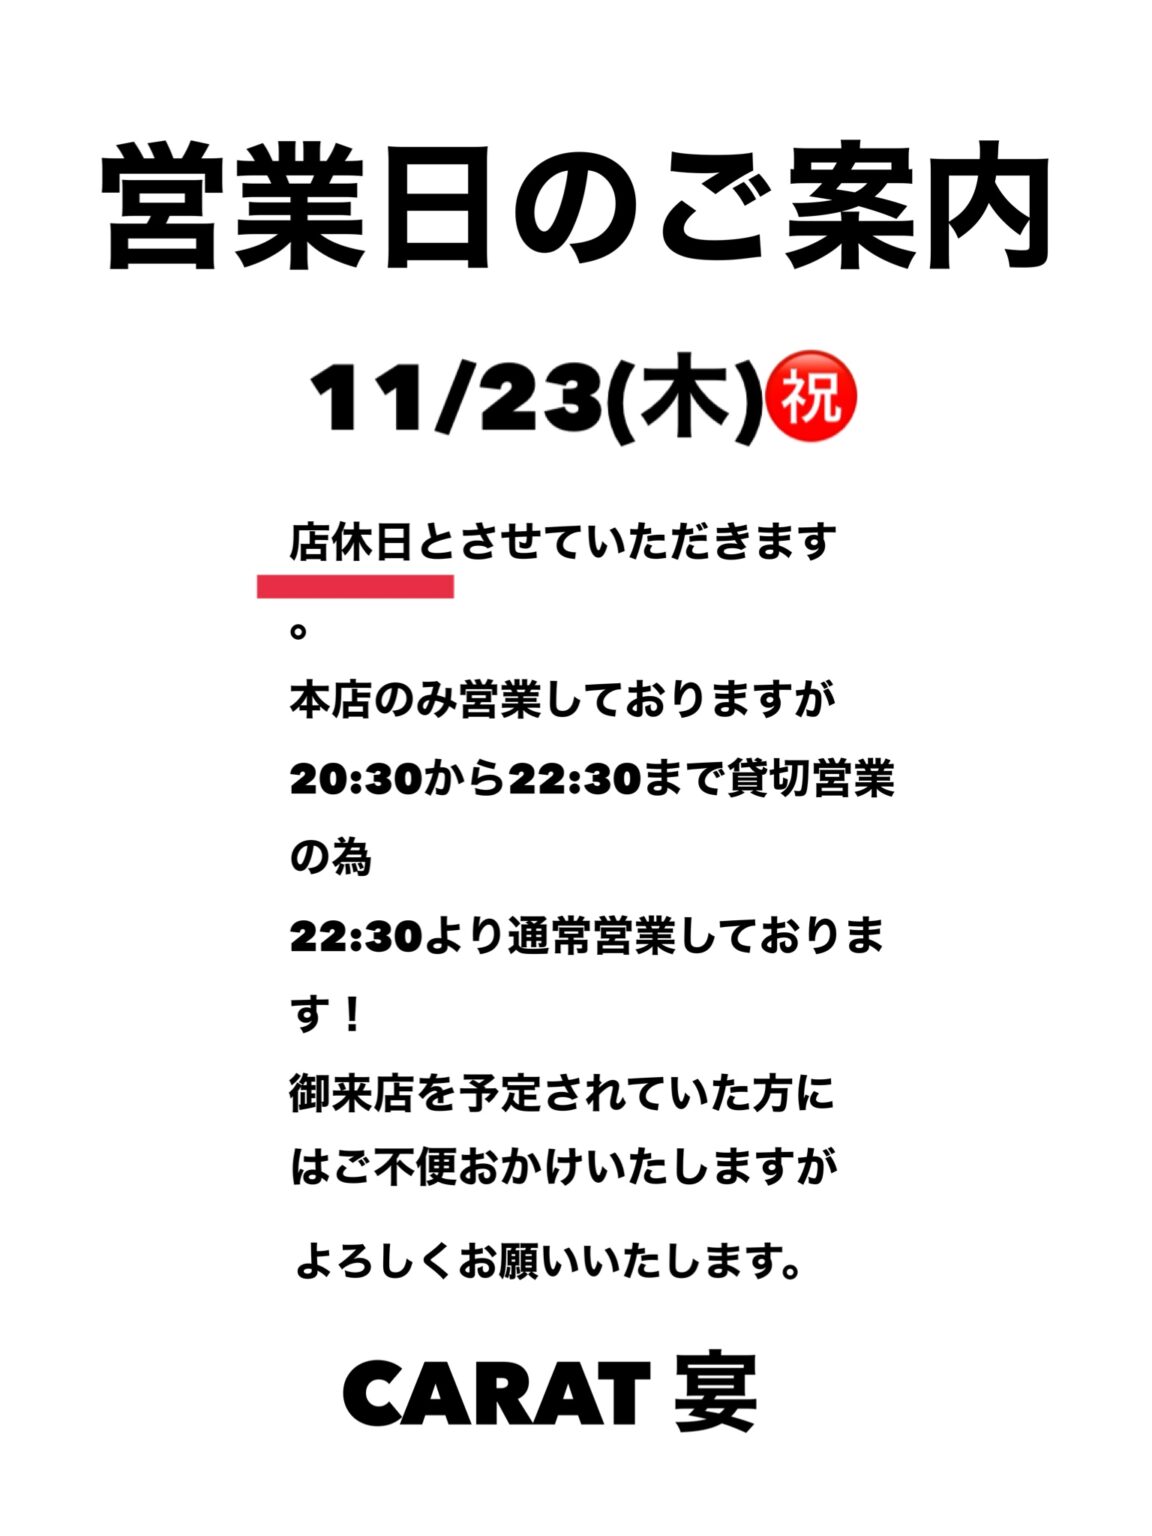 11/23(木)㊗️の営業について - 新橋 スナック CARAT UTAGE 宴